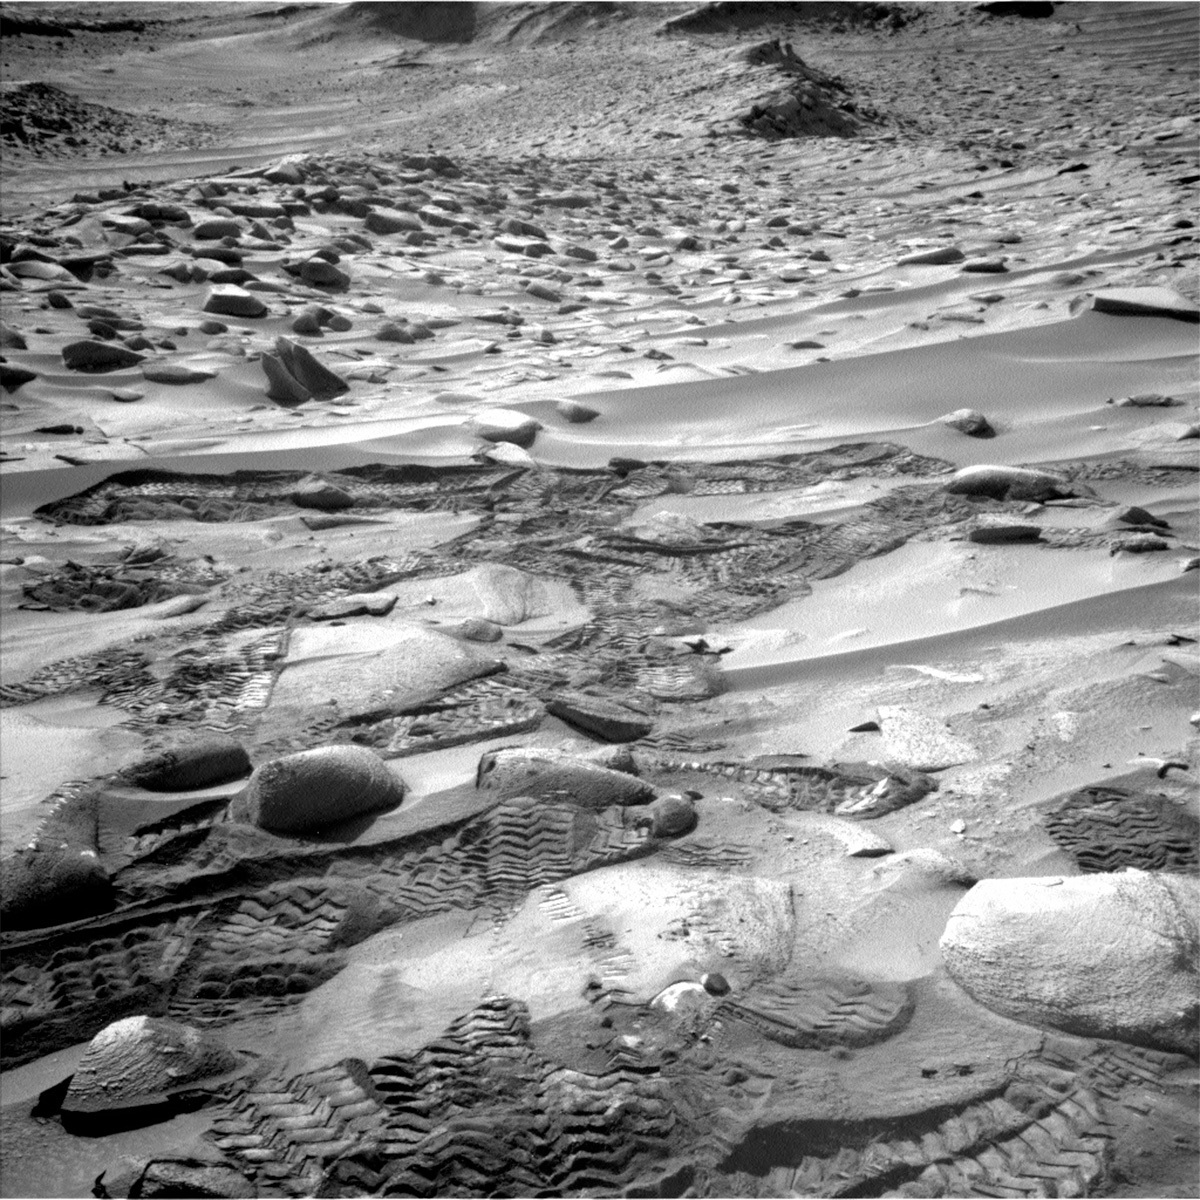 Les traces de Curiosity après un demi-tour. Crédits NASA/JPL – Caltech